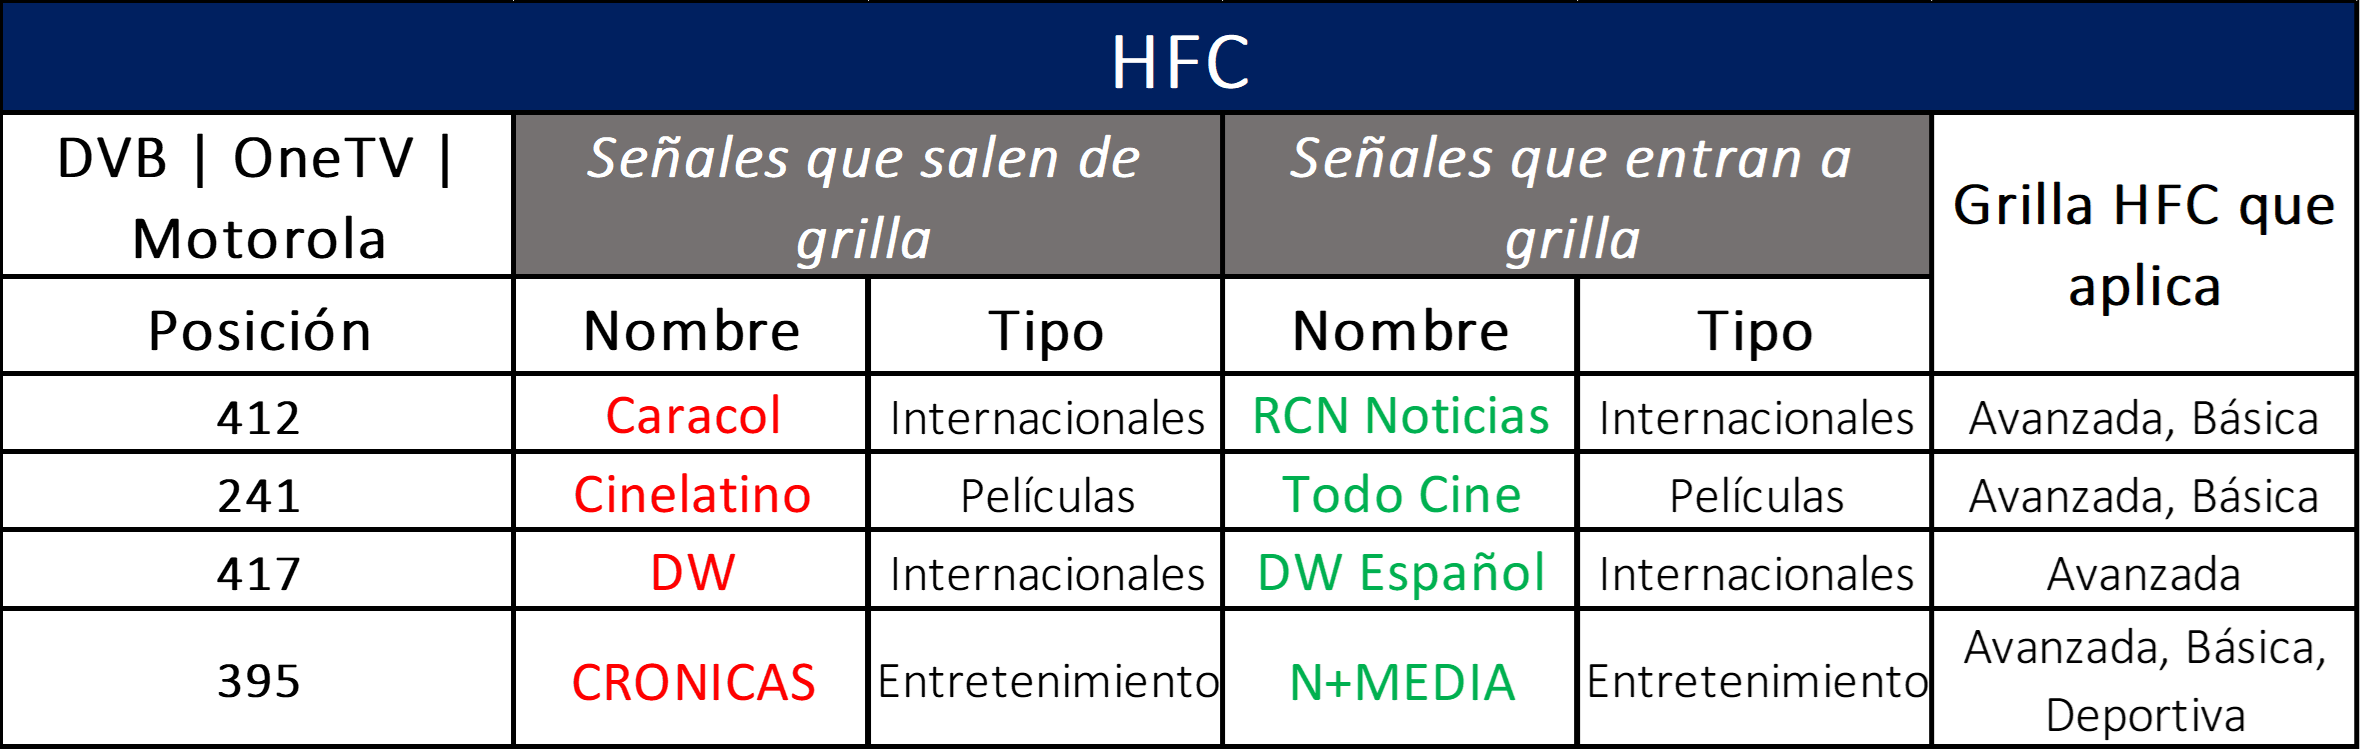 Reemplazo señales HFC.png